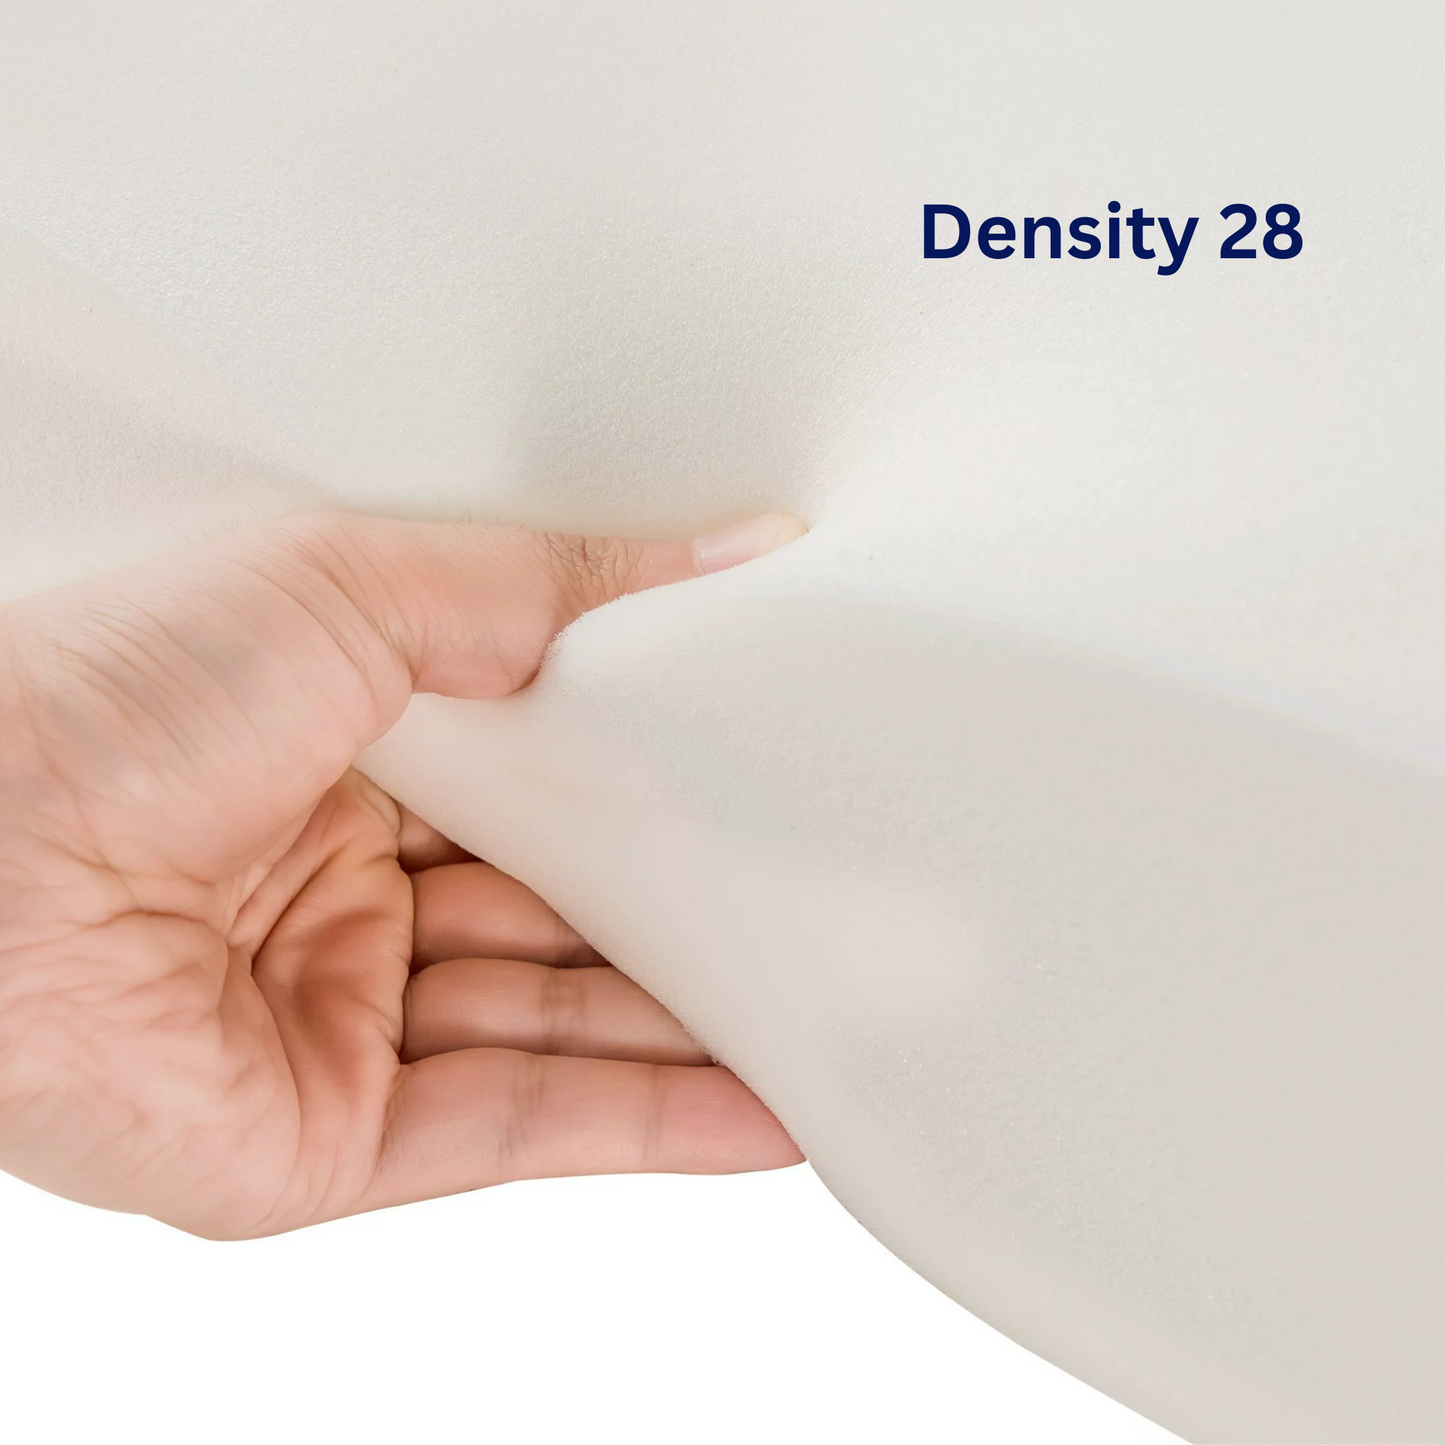 Foam Density 28